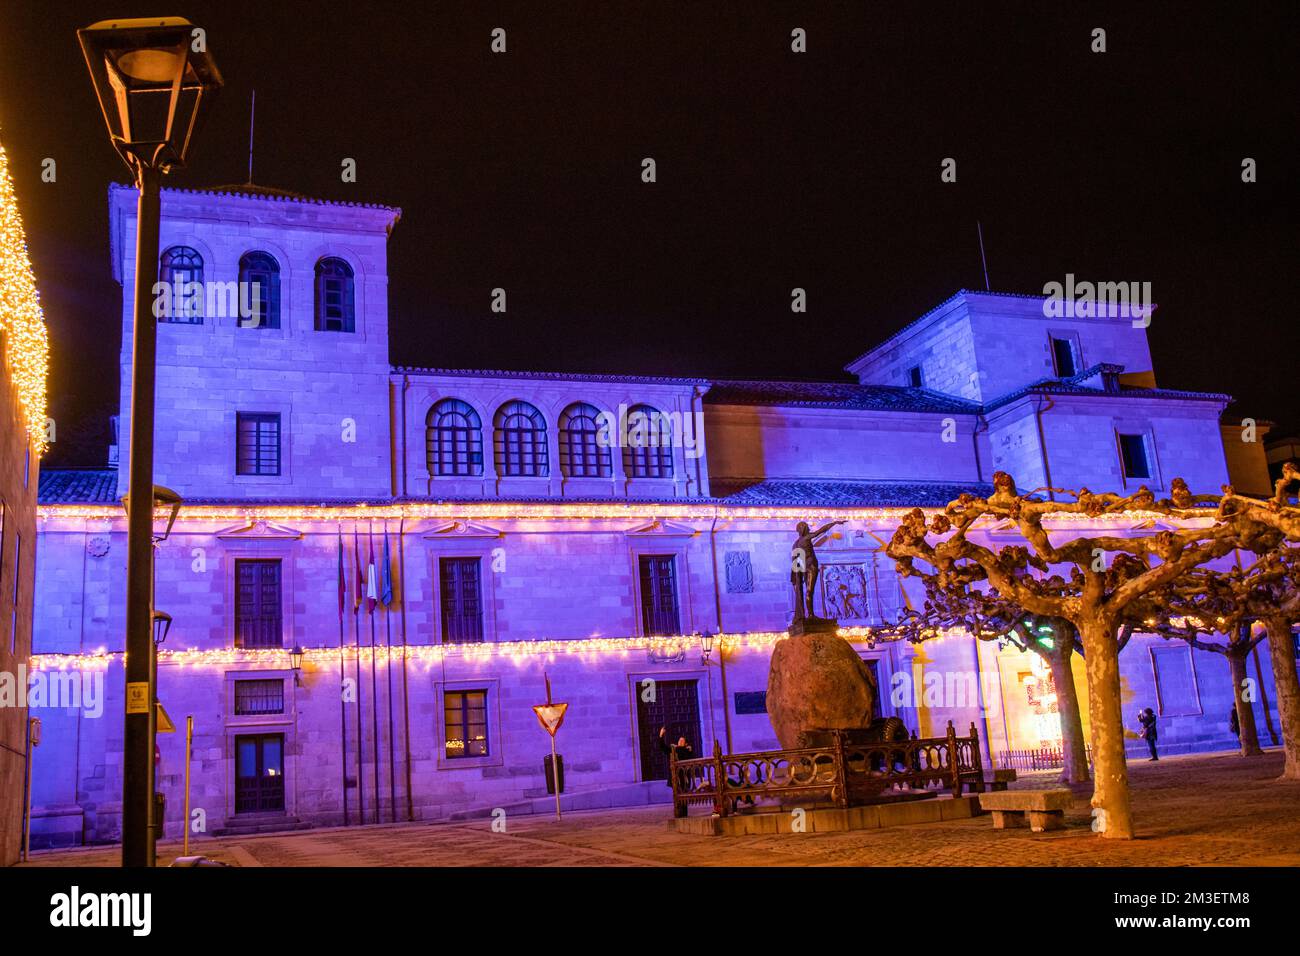 Plaza Viriato en Zamora, España, con la decoración navideña Banque D'Images